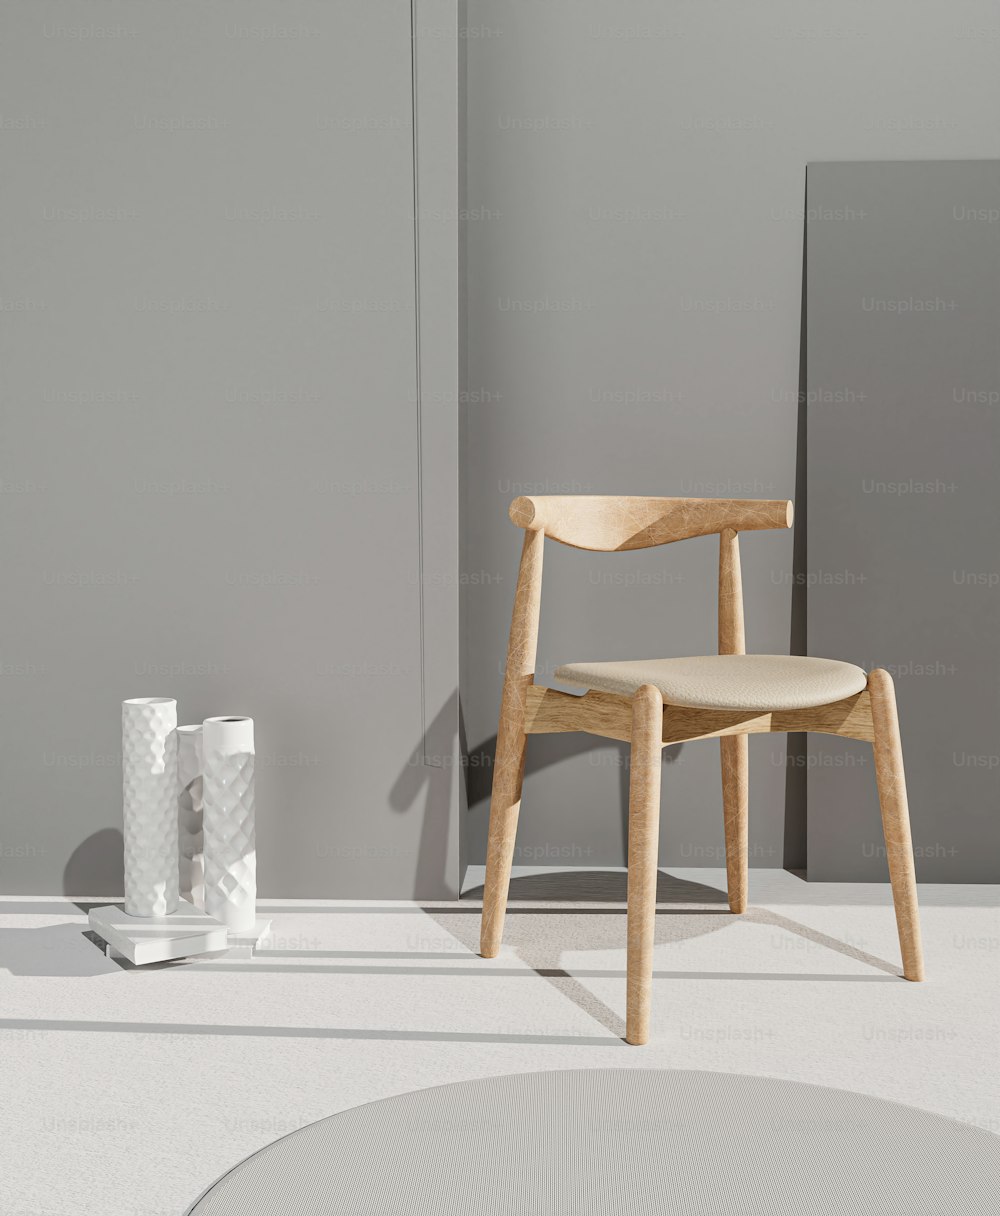 Una silla de madera sentada junto a un jarrón blanco